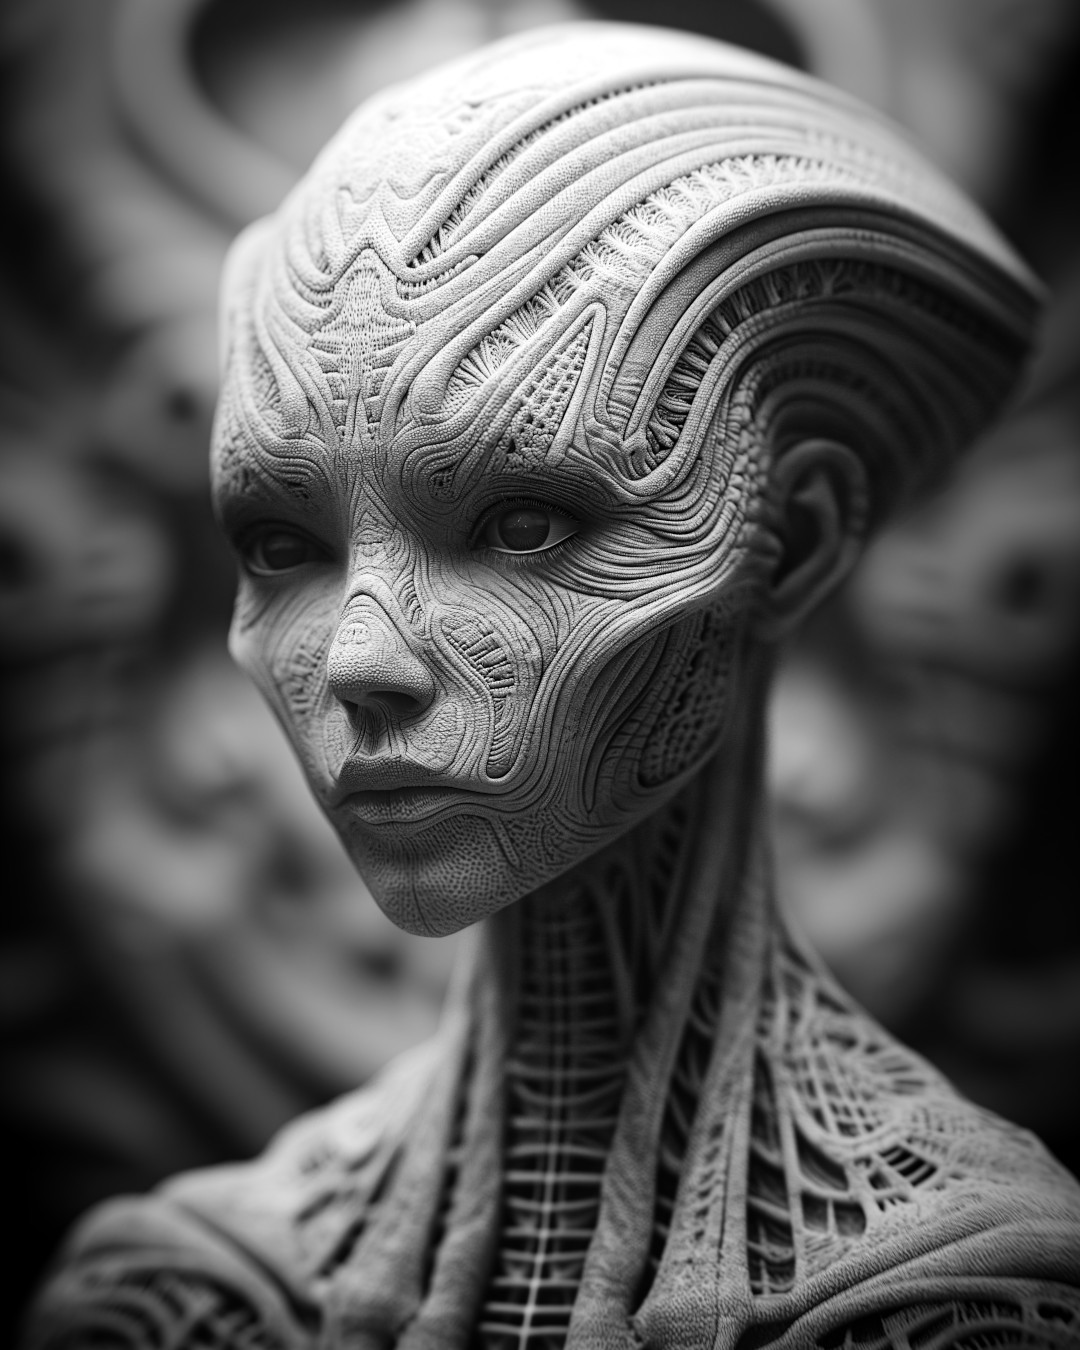 Female alien, hyper-detailed portrait, black and white